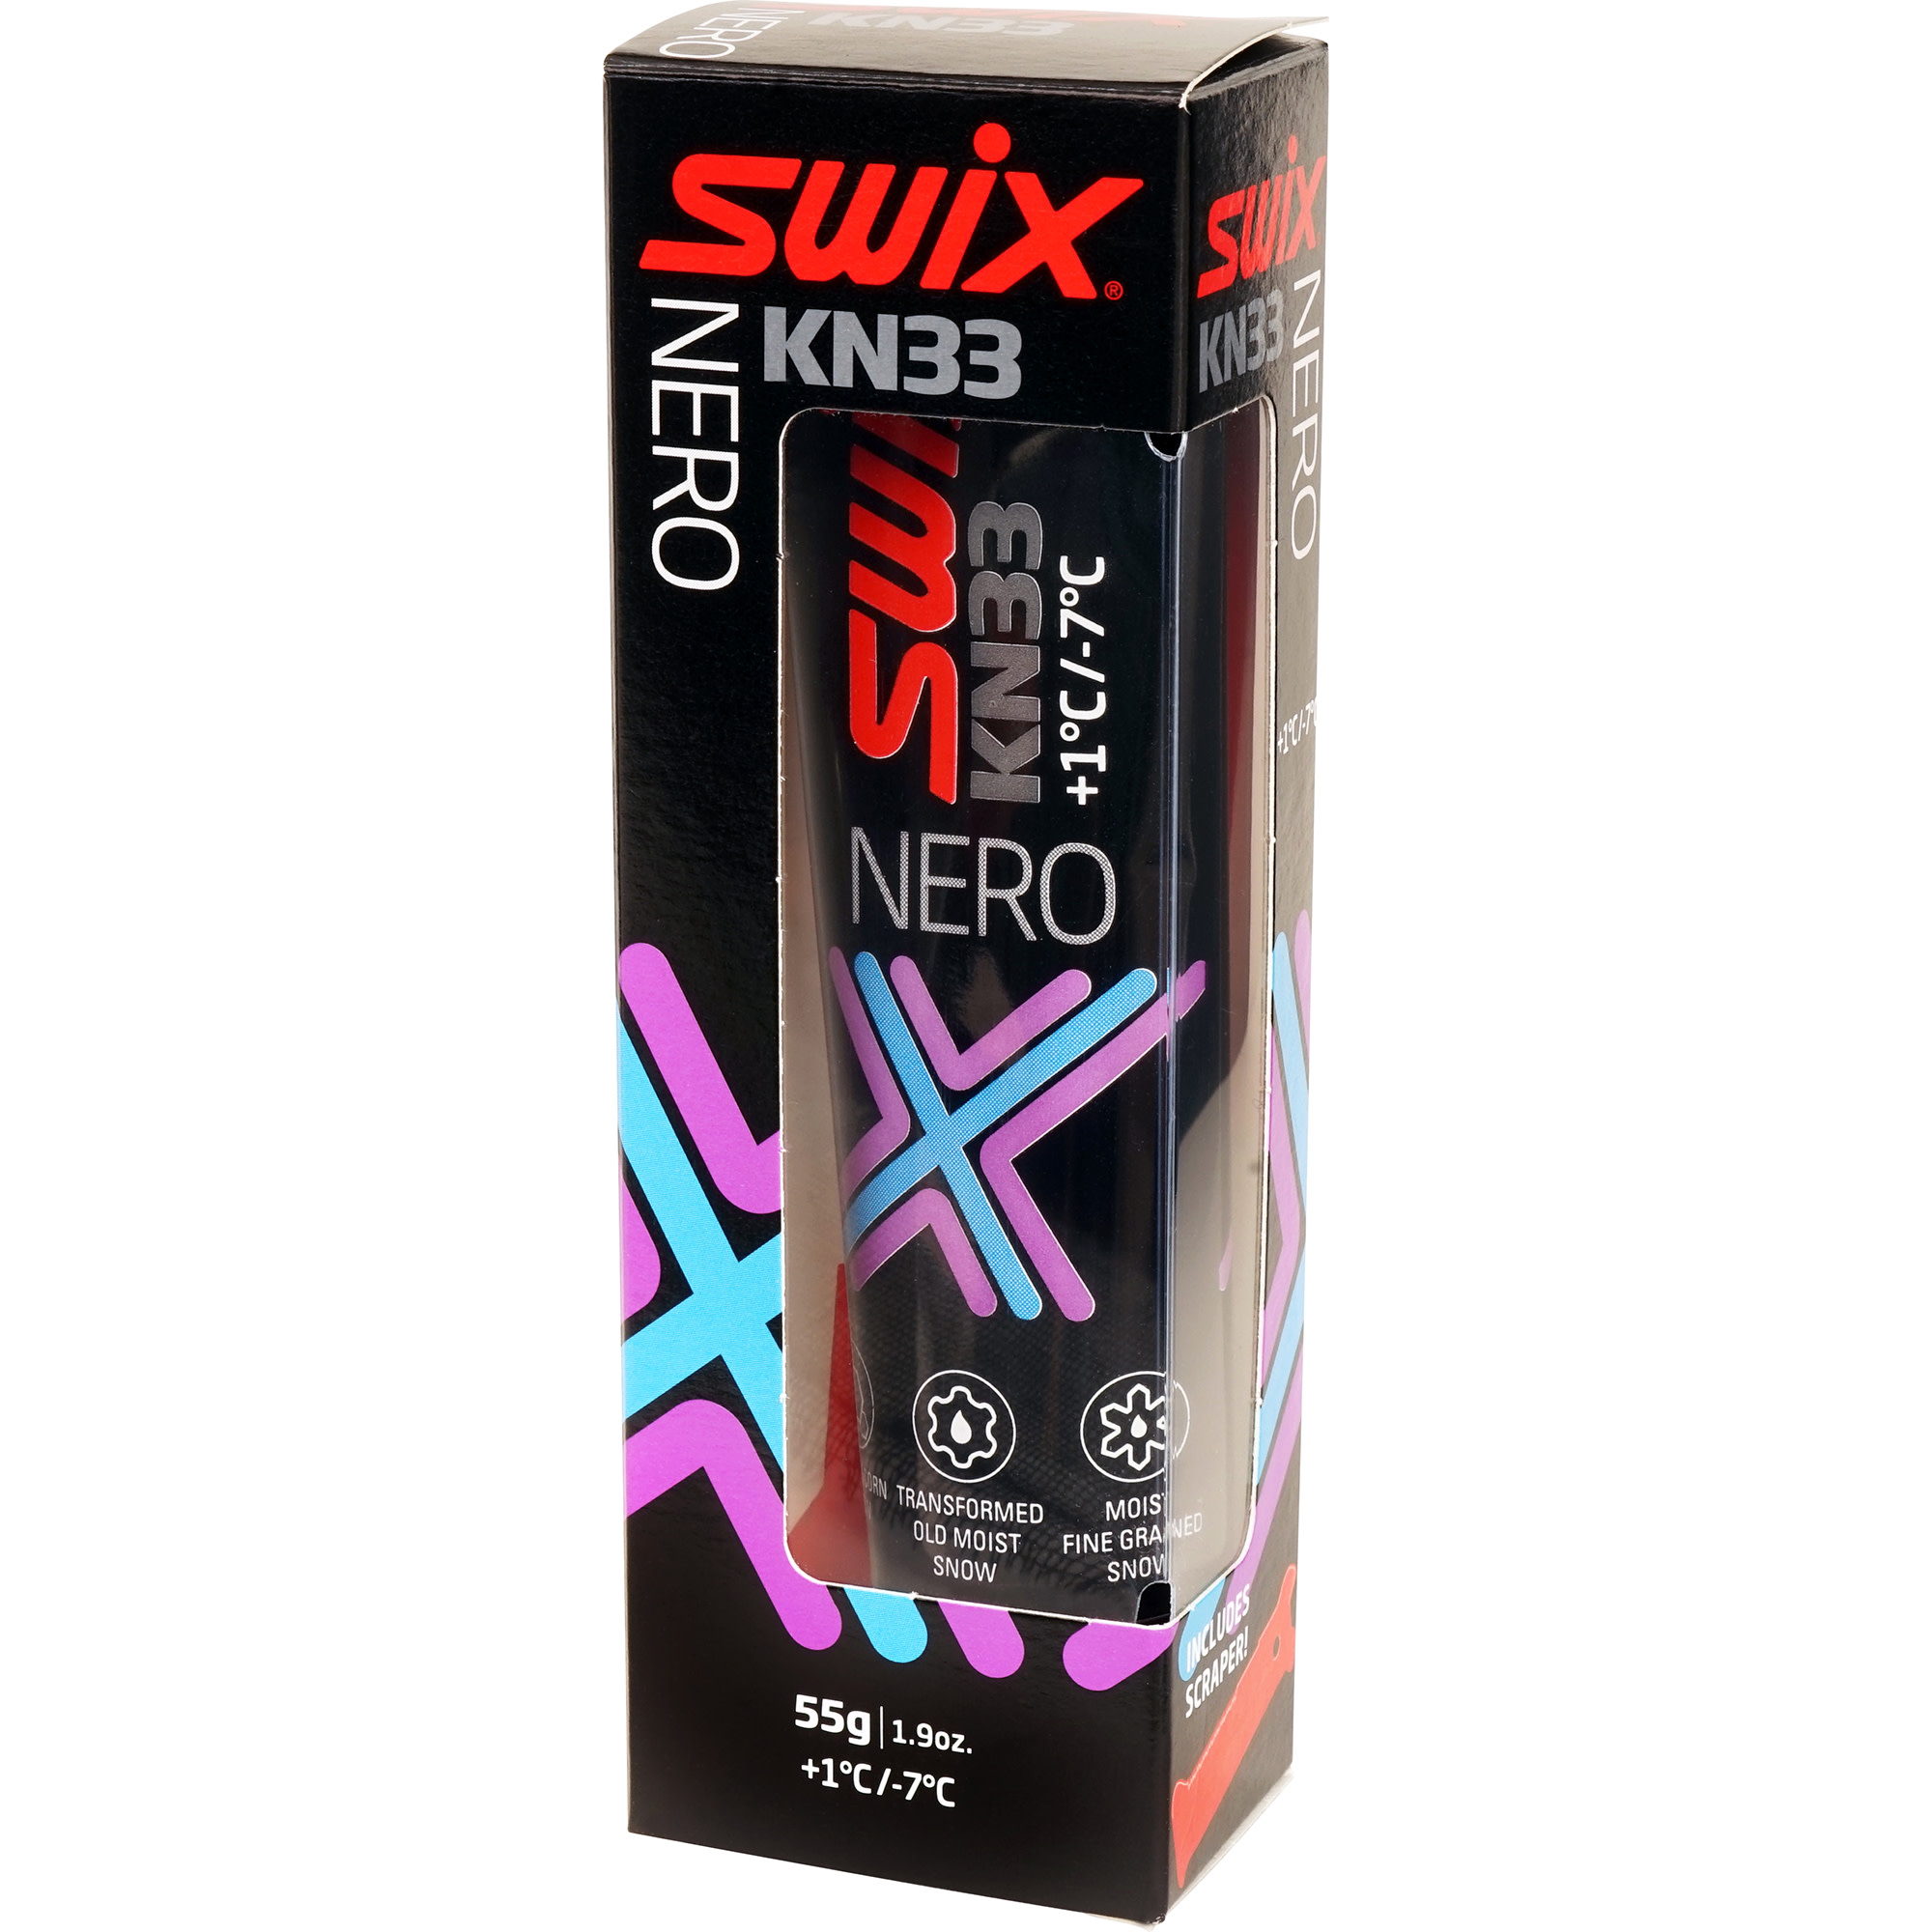 Swix KN33 Nero +1c/-7c Nocolour